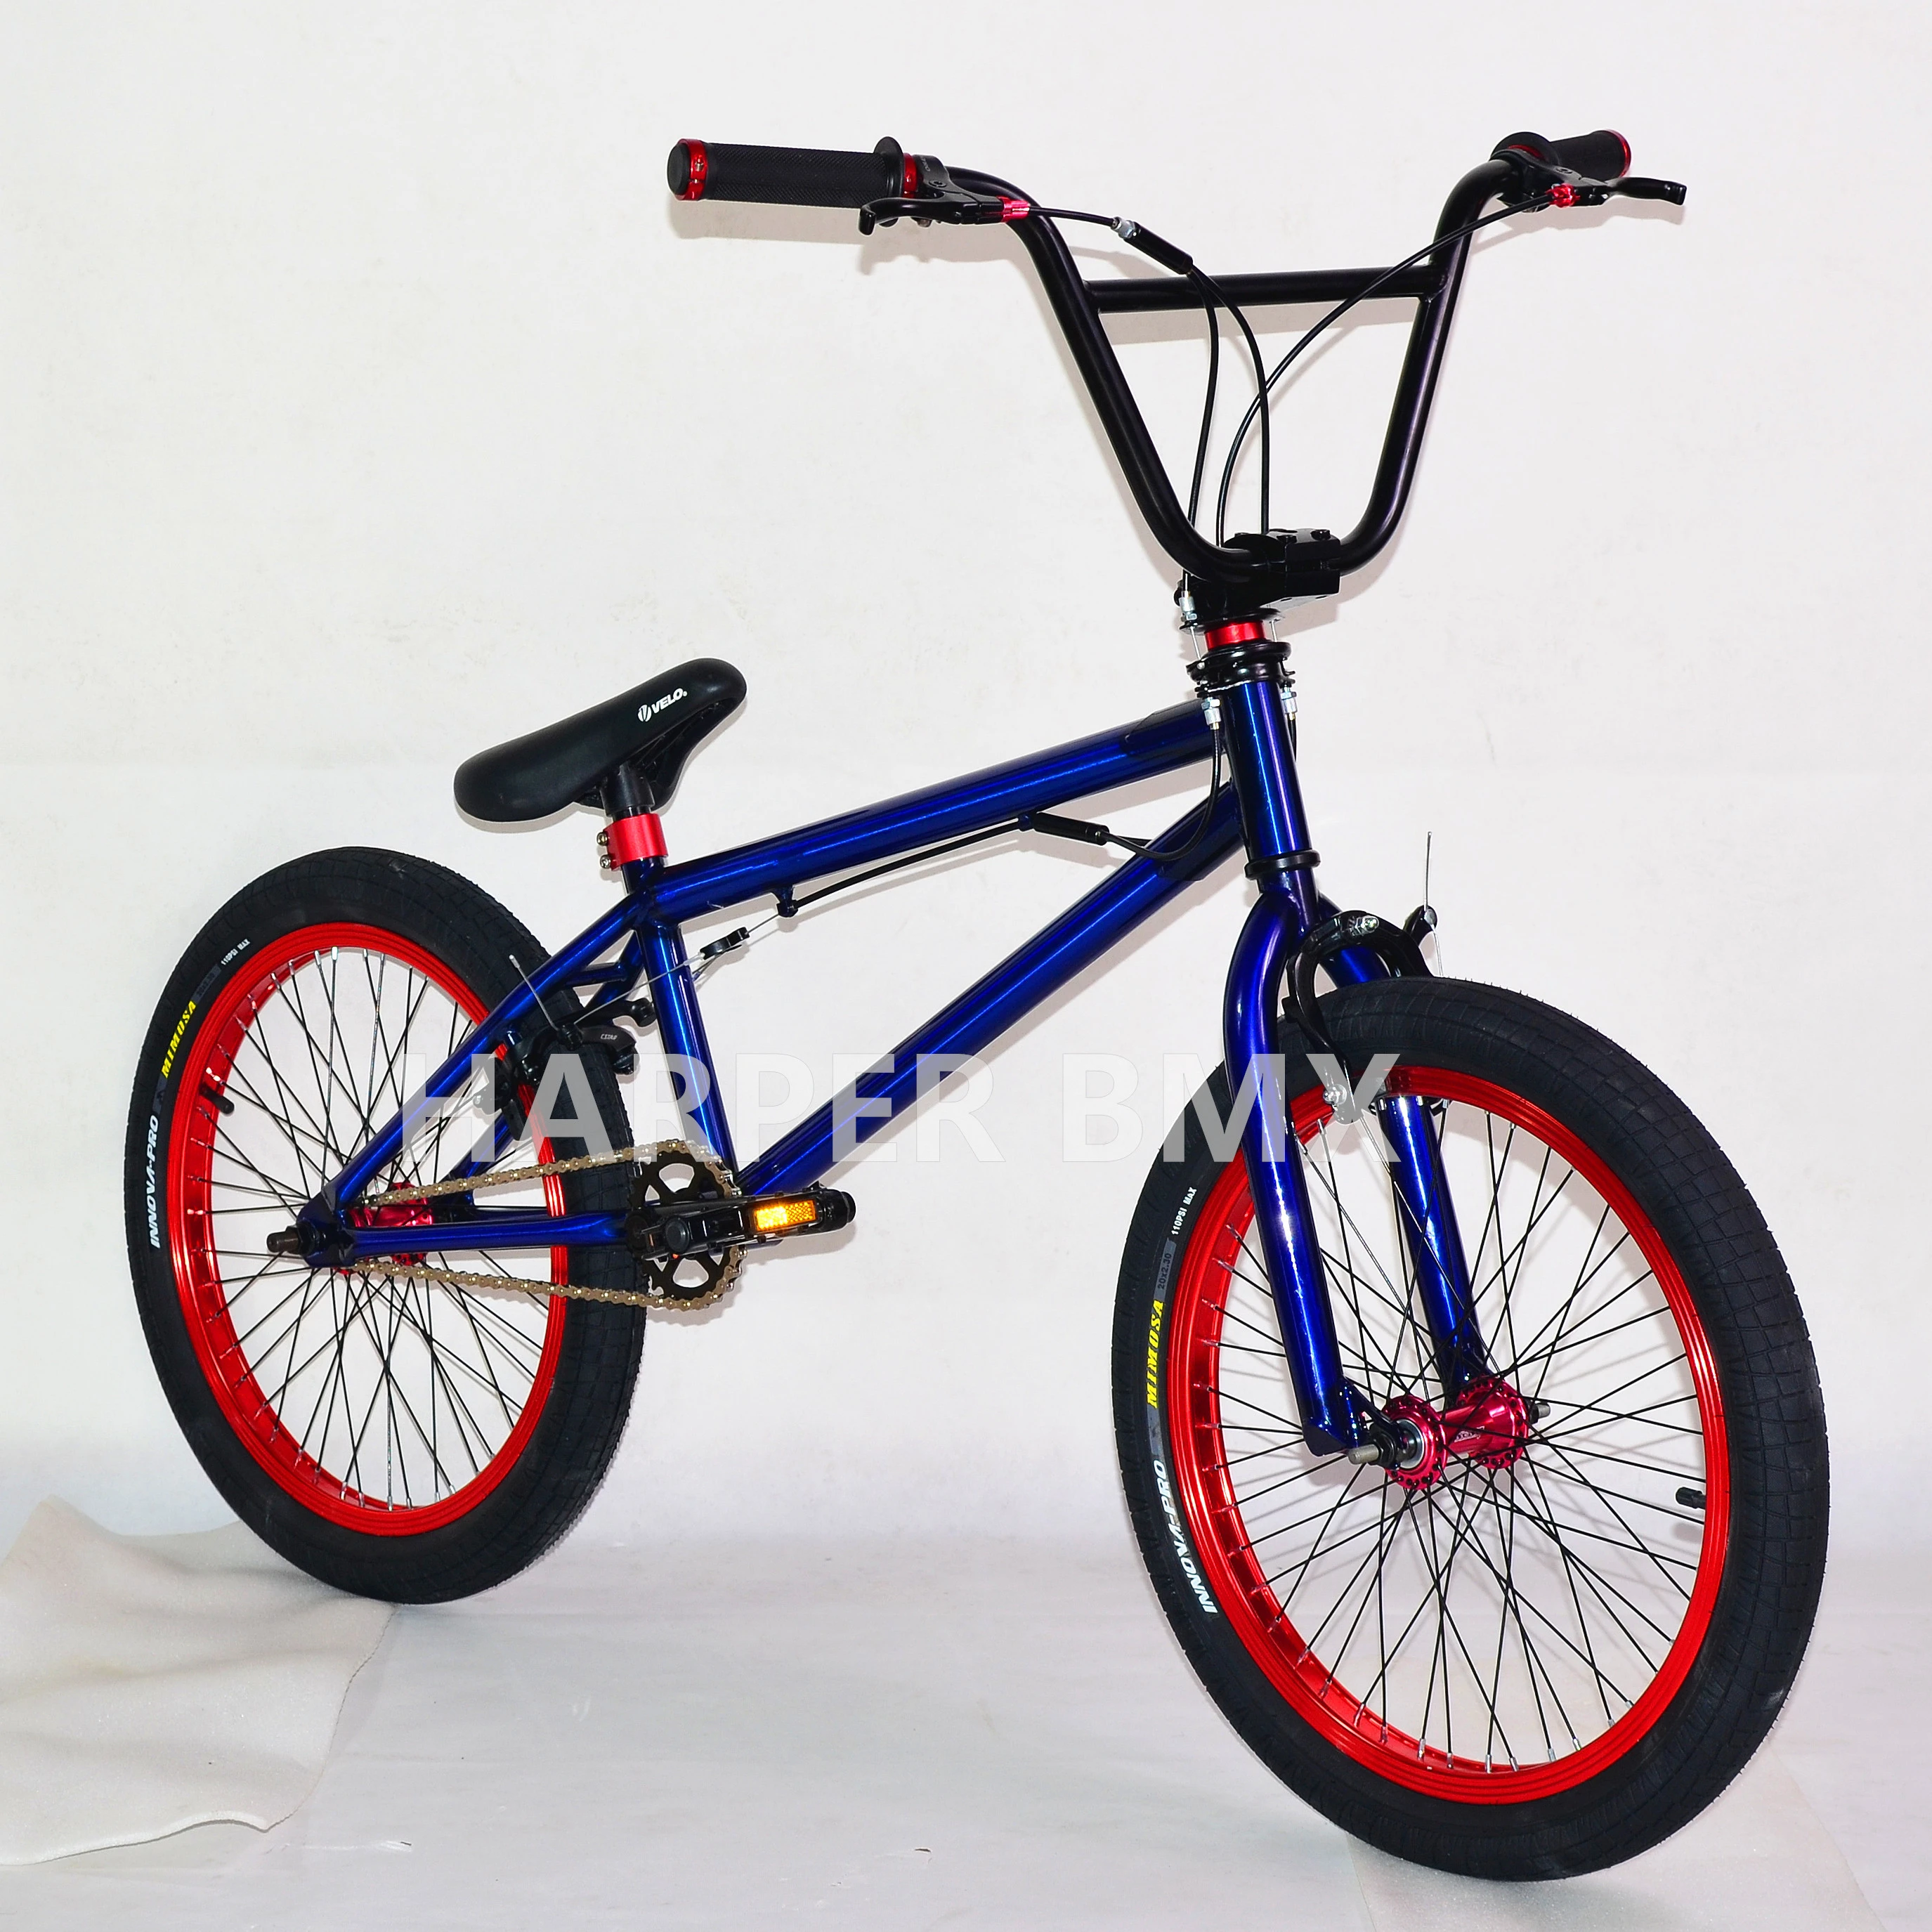 Unique design translucent color bicicleta bmx 20 inch for sale